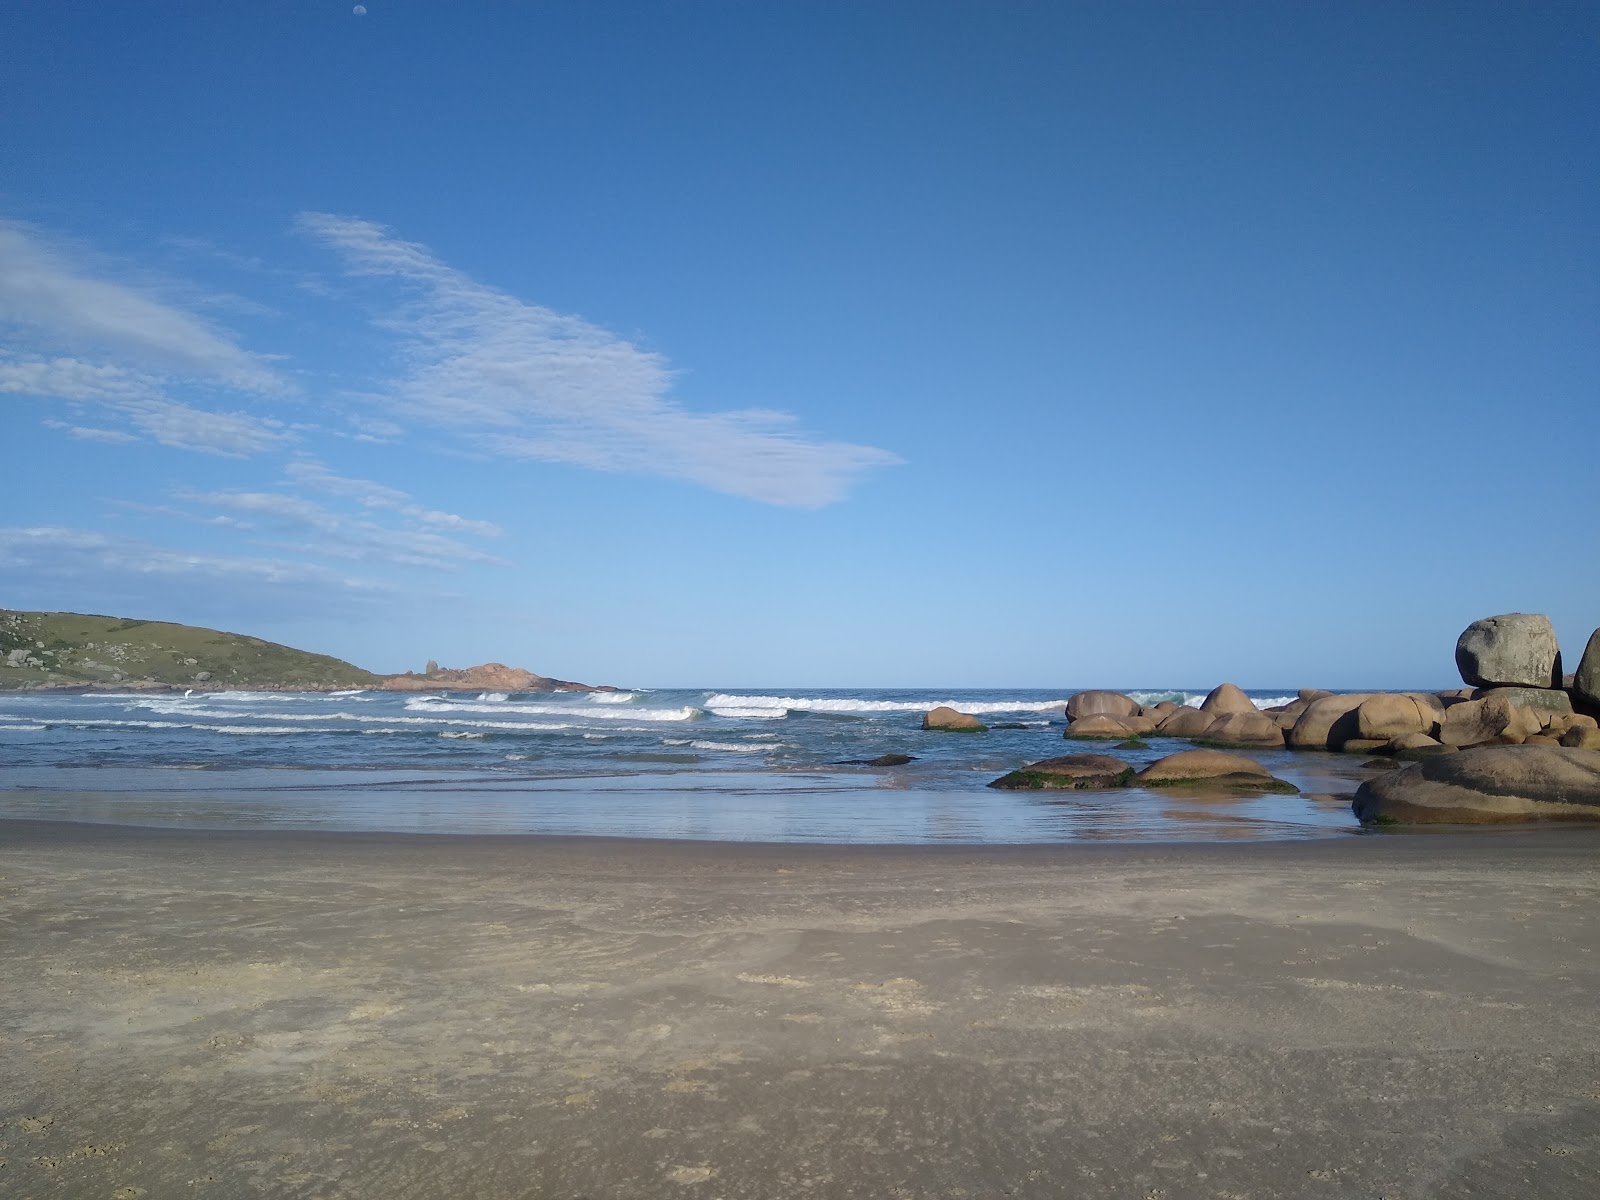 Valokuva Praia da Gravataista. sijaitsee luonnonalueella